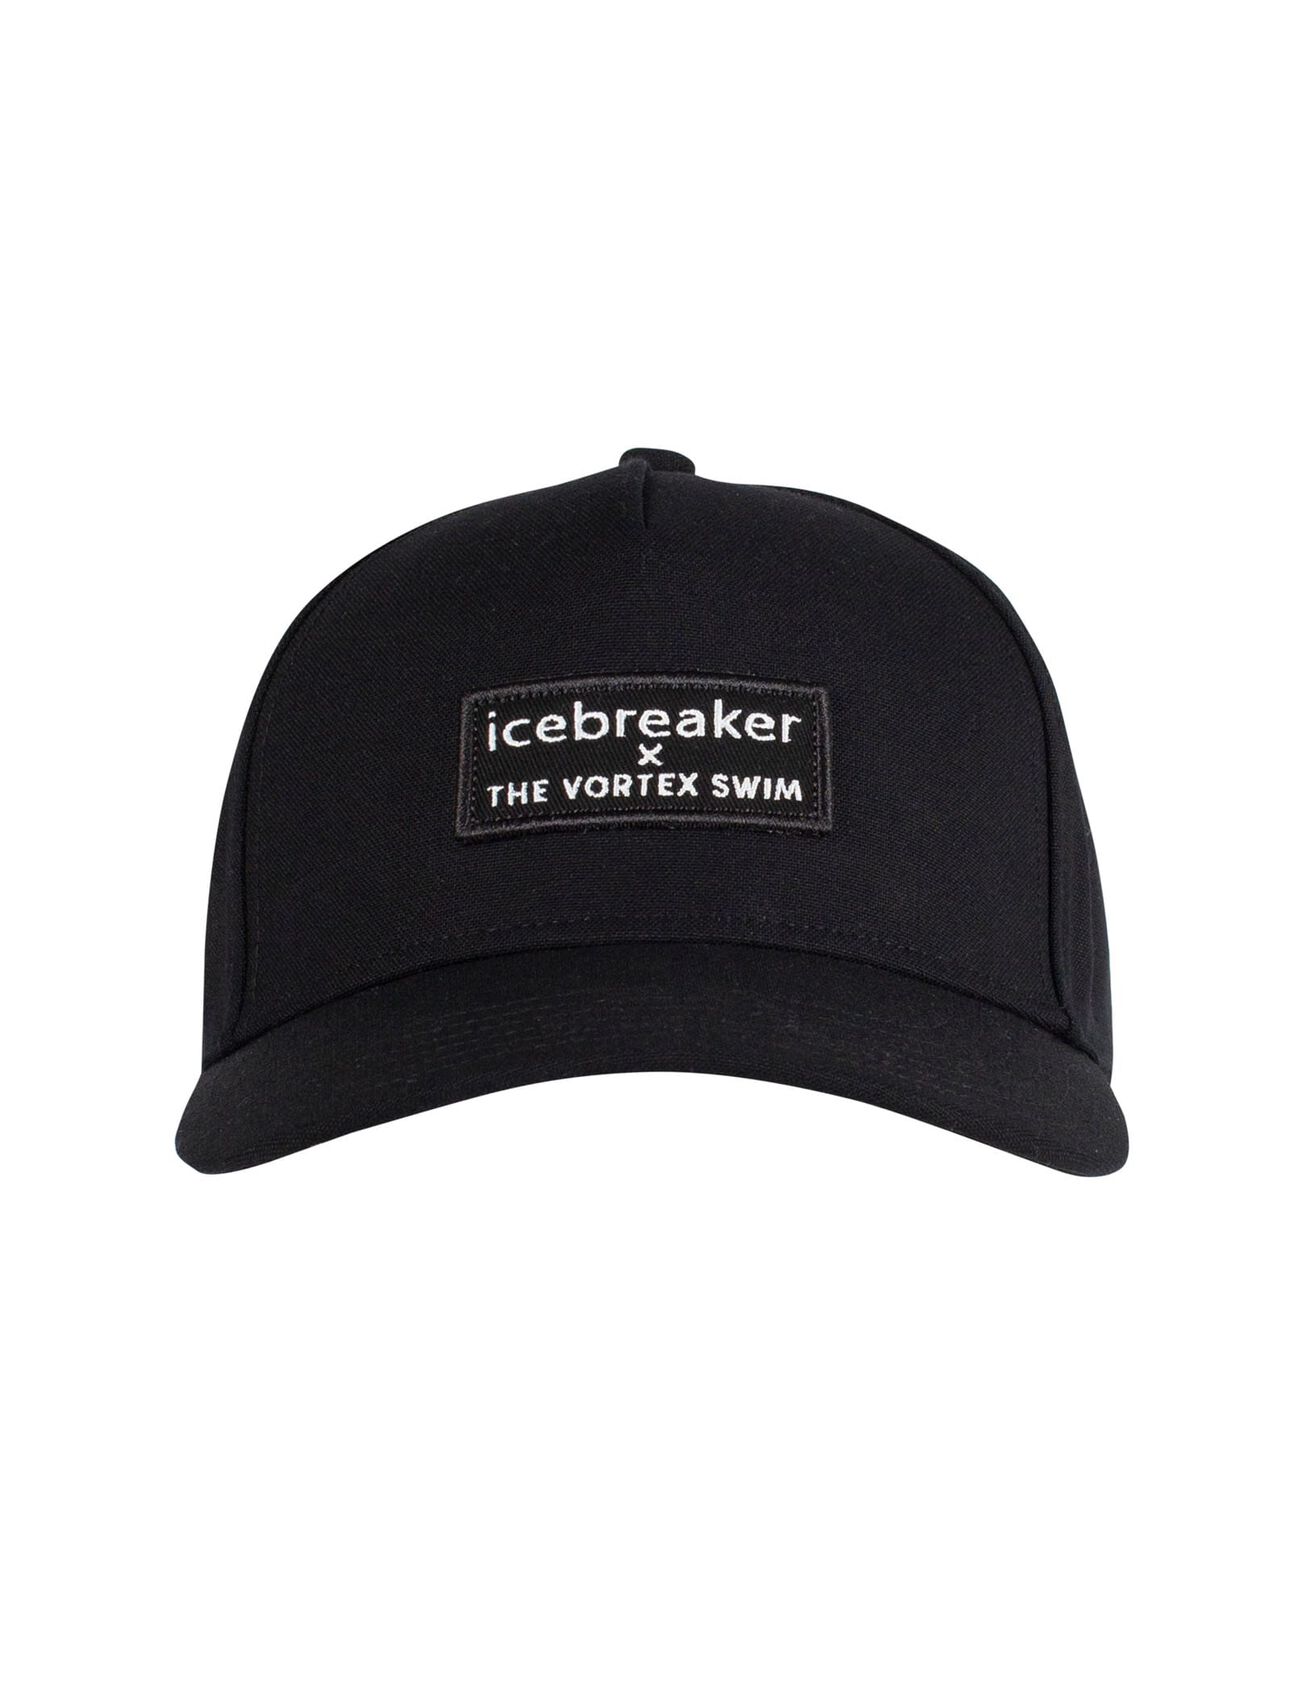 Vortex Swim Icebreaker男女通用款帽子